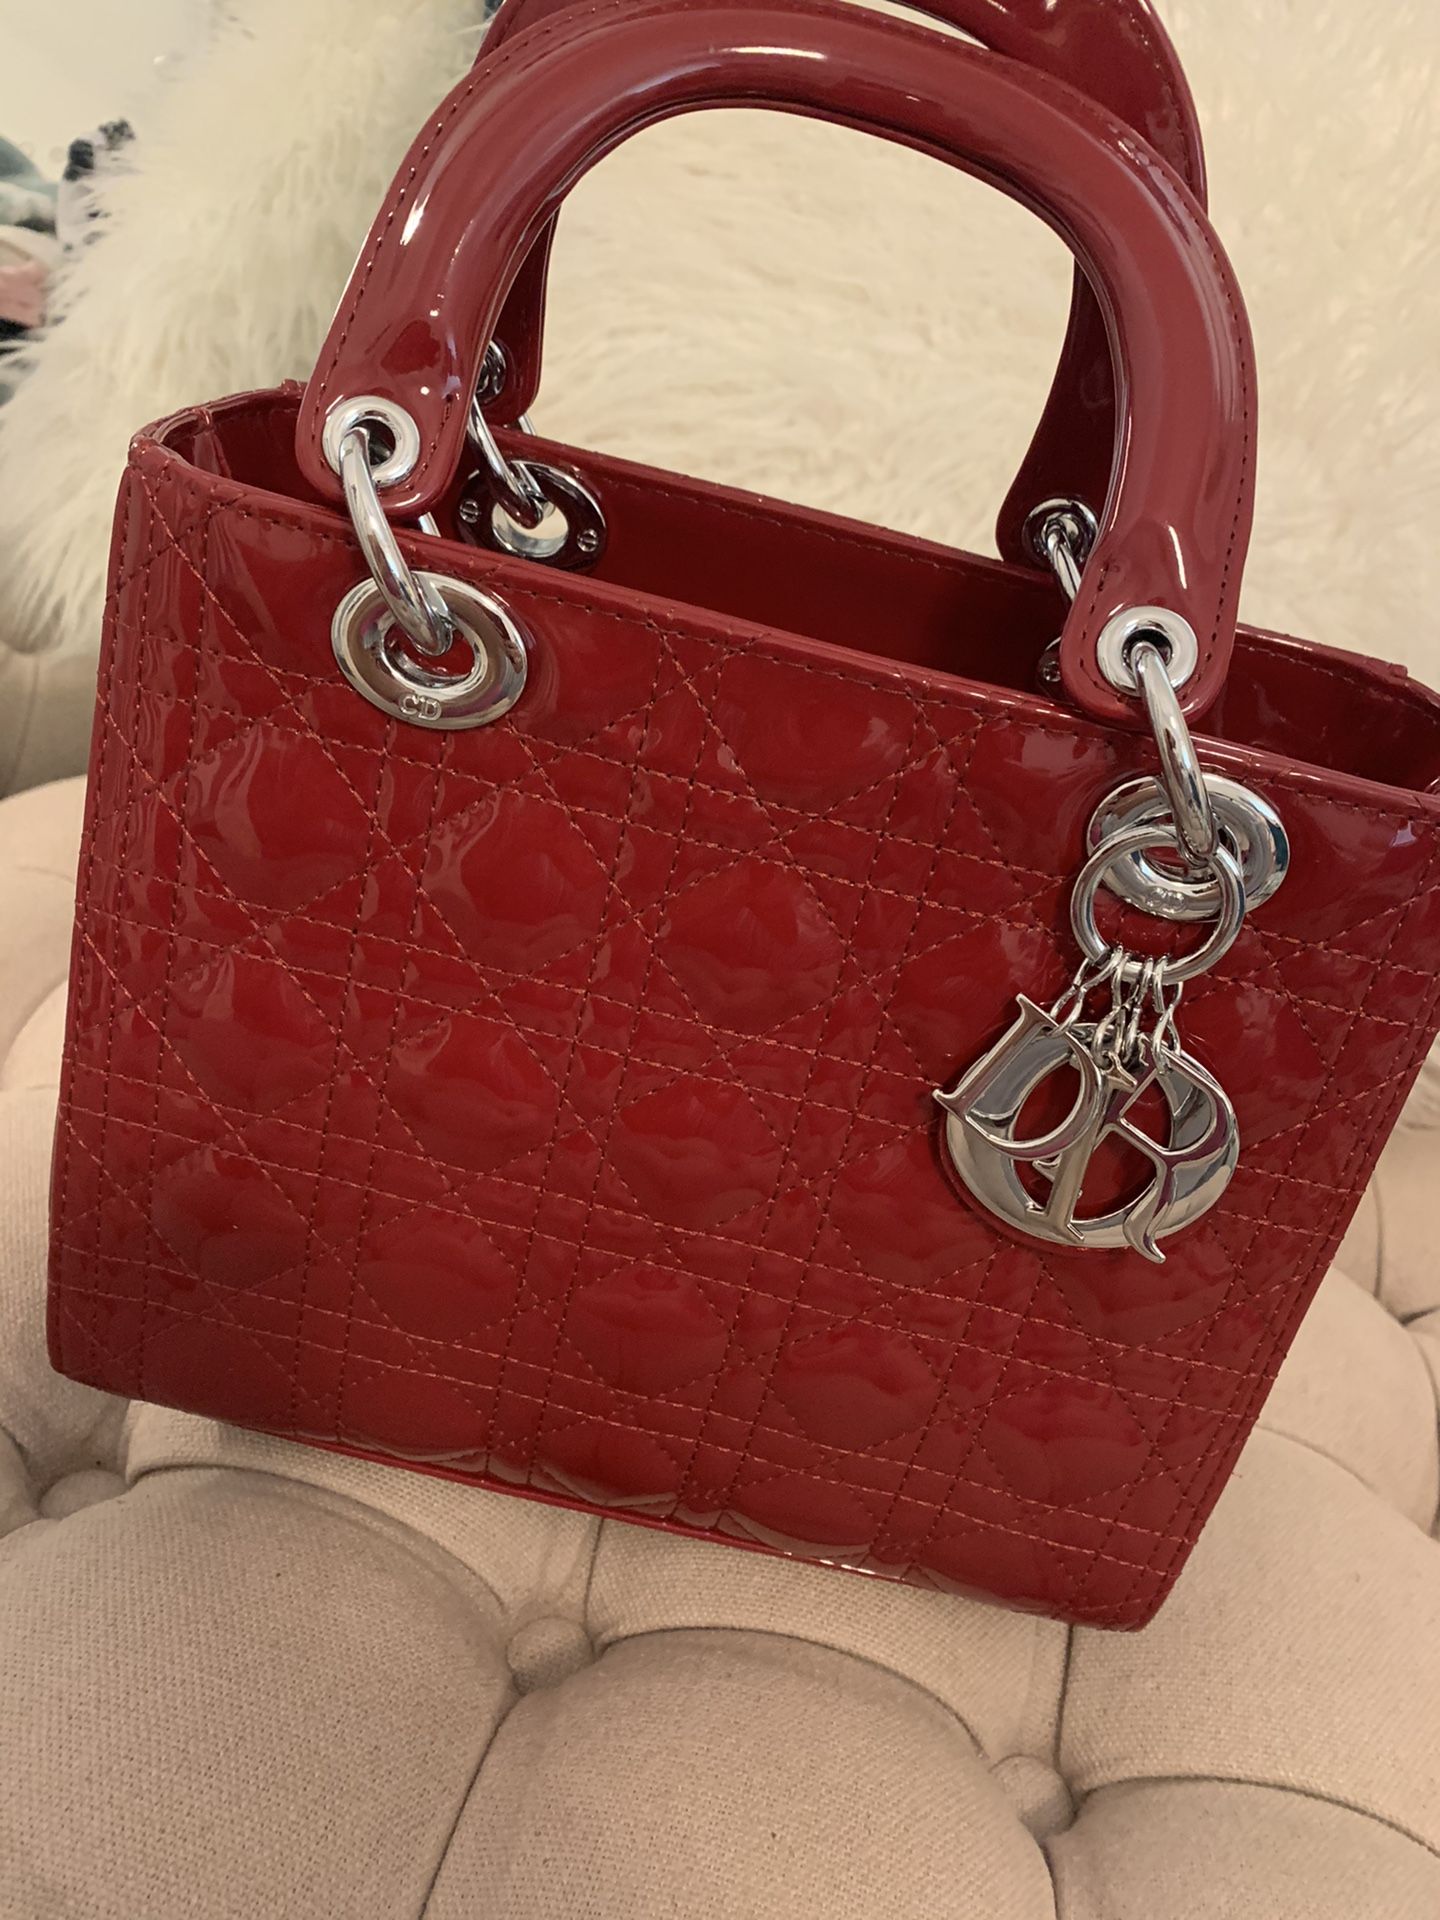 Lady Dior bag luxury